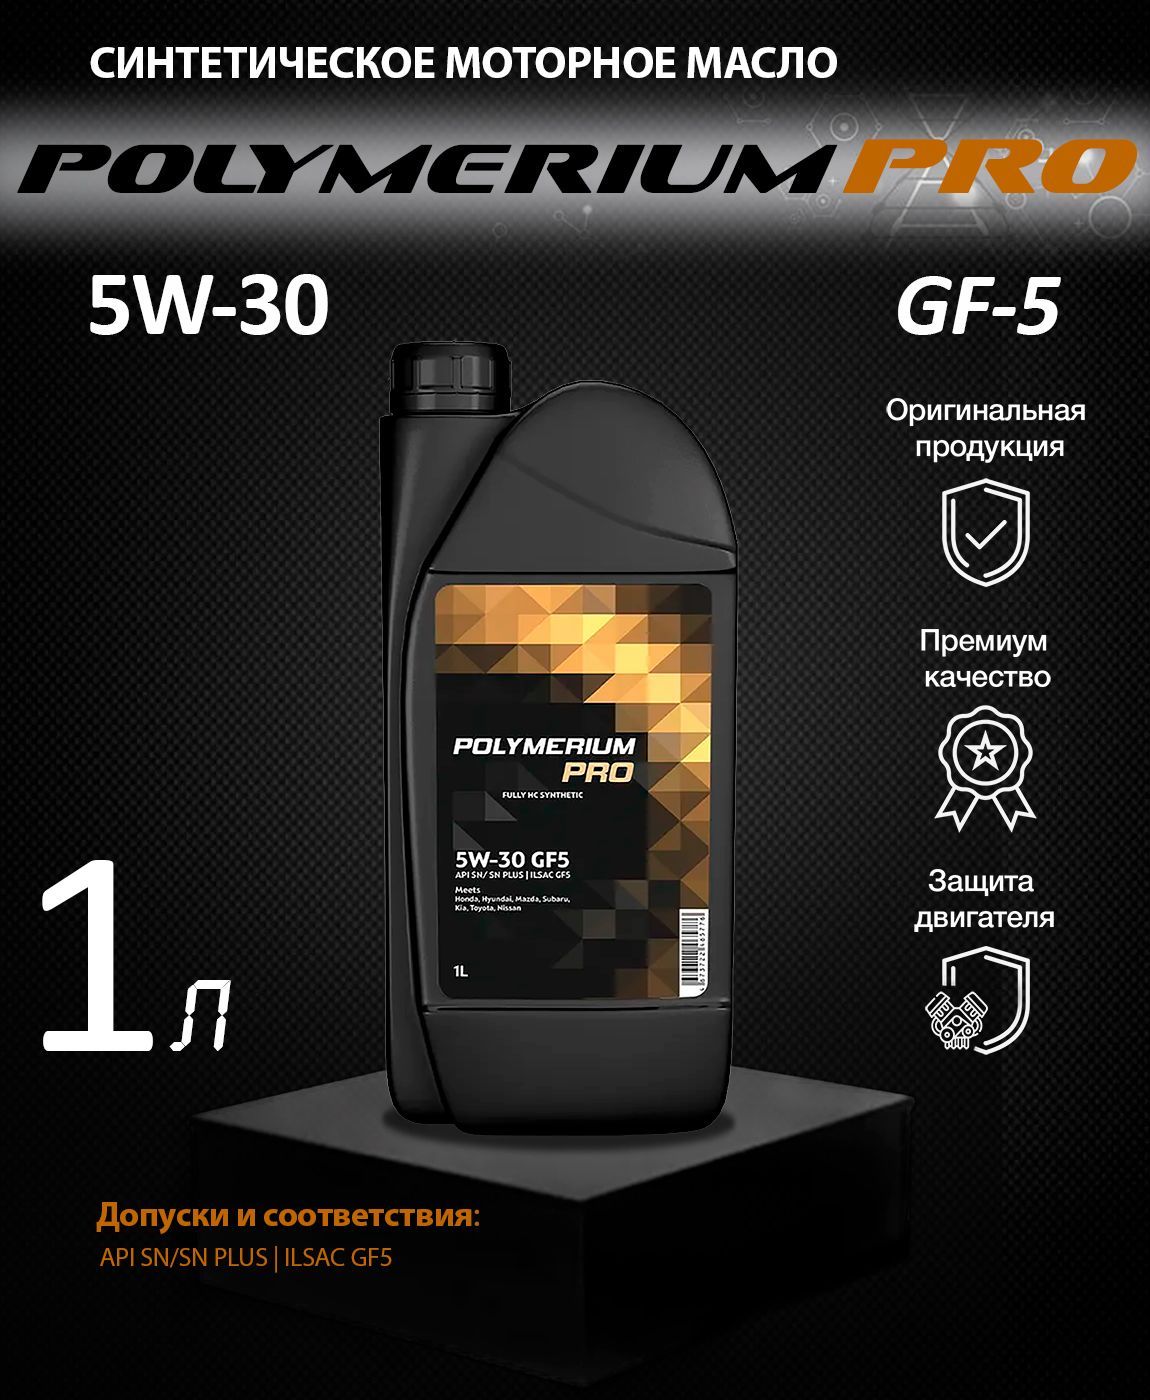 Полимериум 5w40 отзывы. Полимериум 5w30 gf5. Моторное масло полимериум 5w30. Polymerium Pro 5w-40. Polymerium Pro 5w-30.